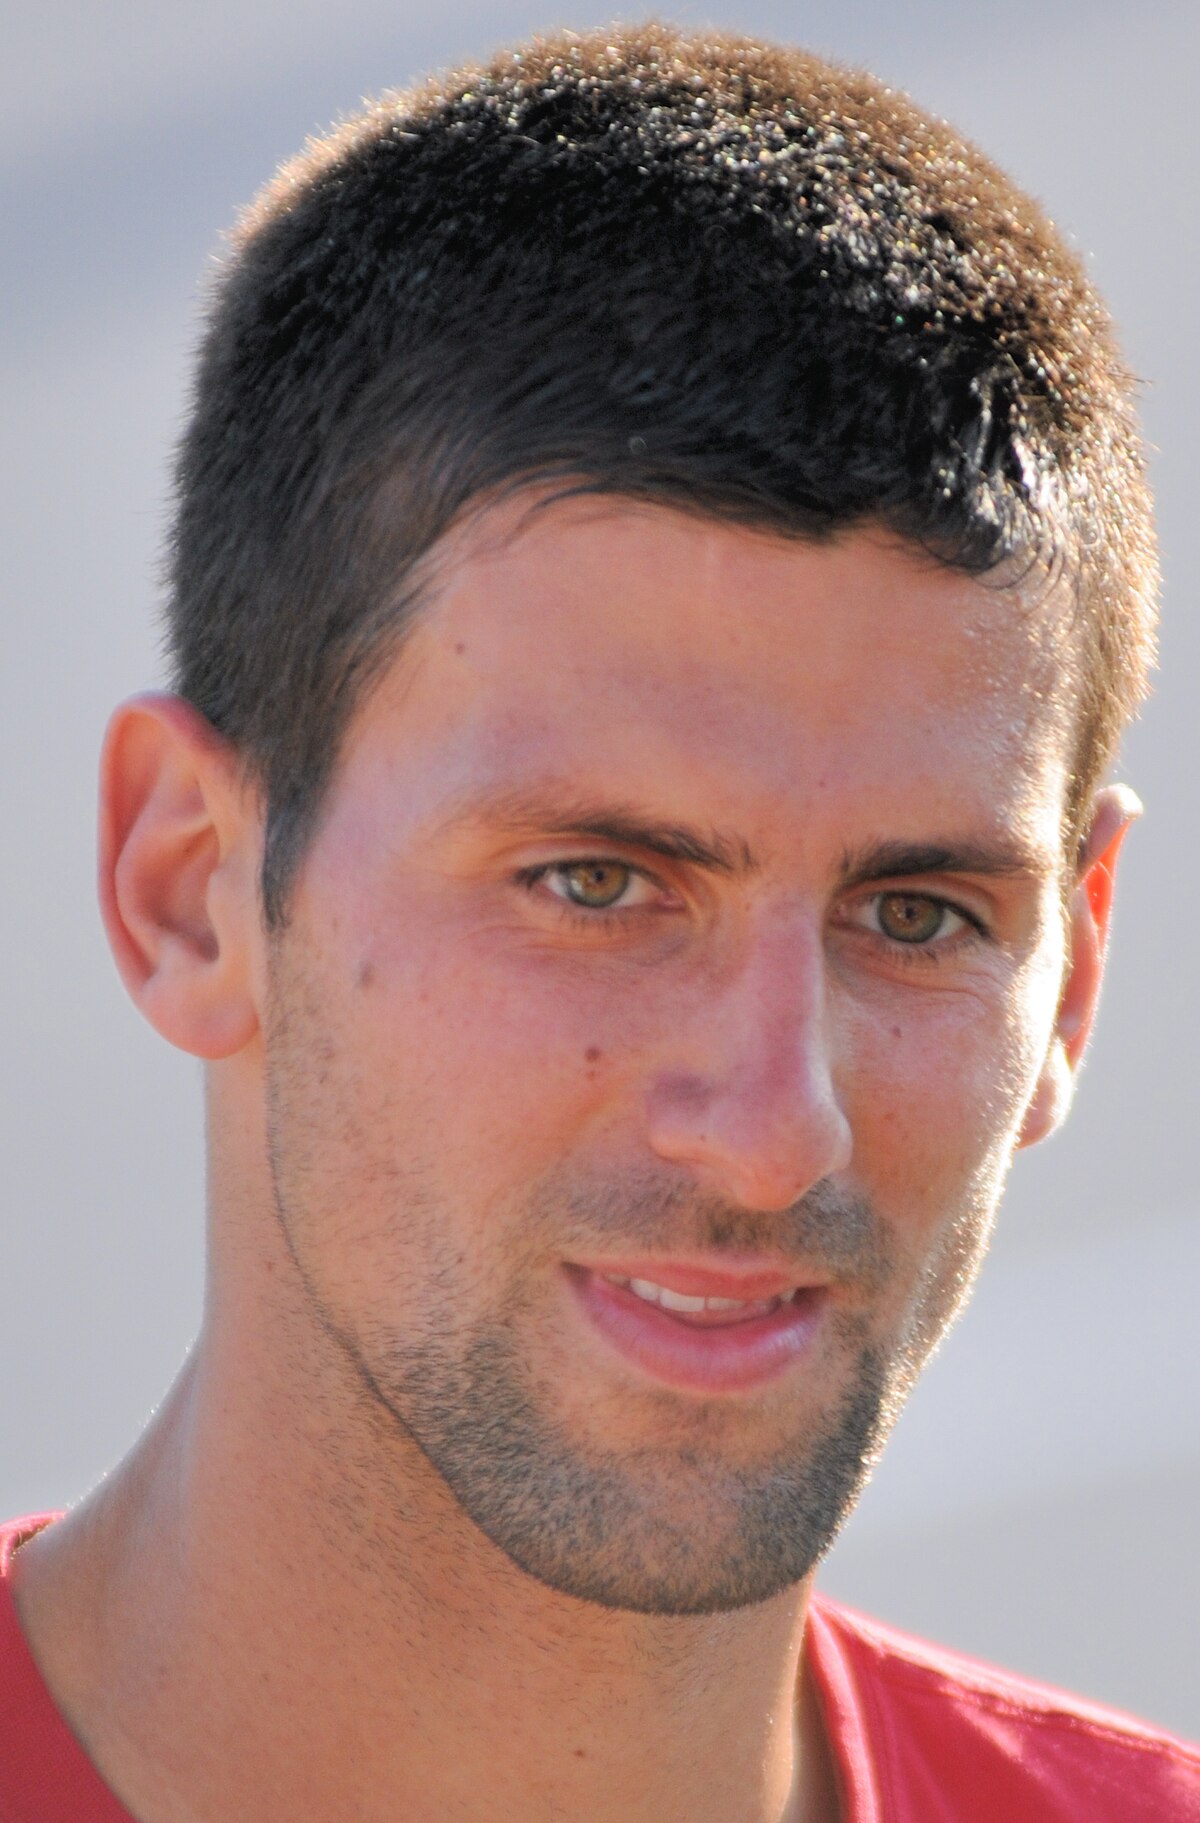 List of career achievements by Novak Djokovic - Wikipedia